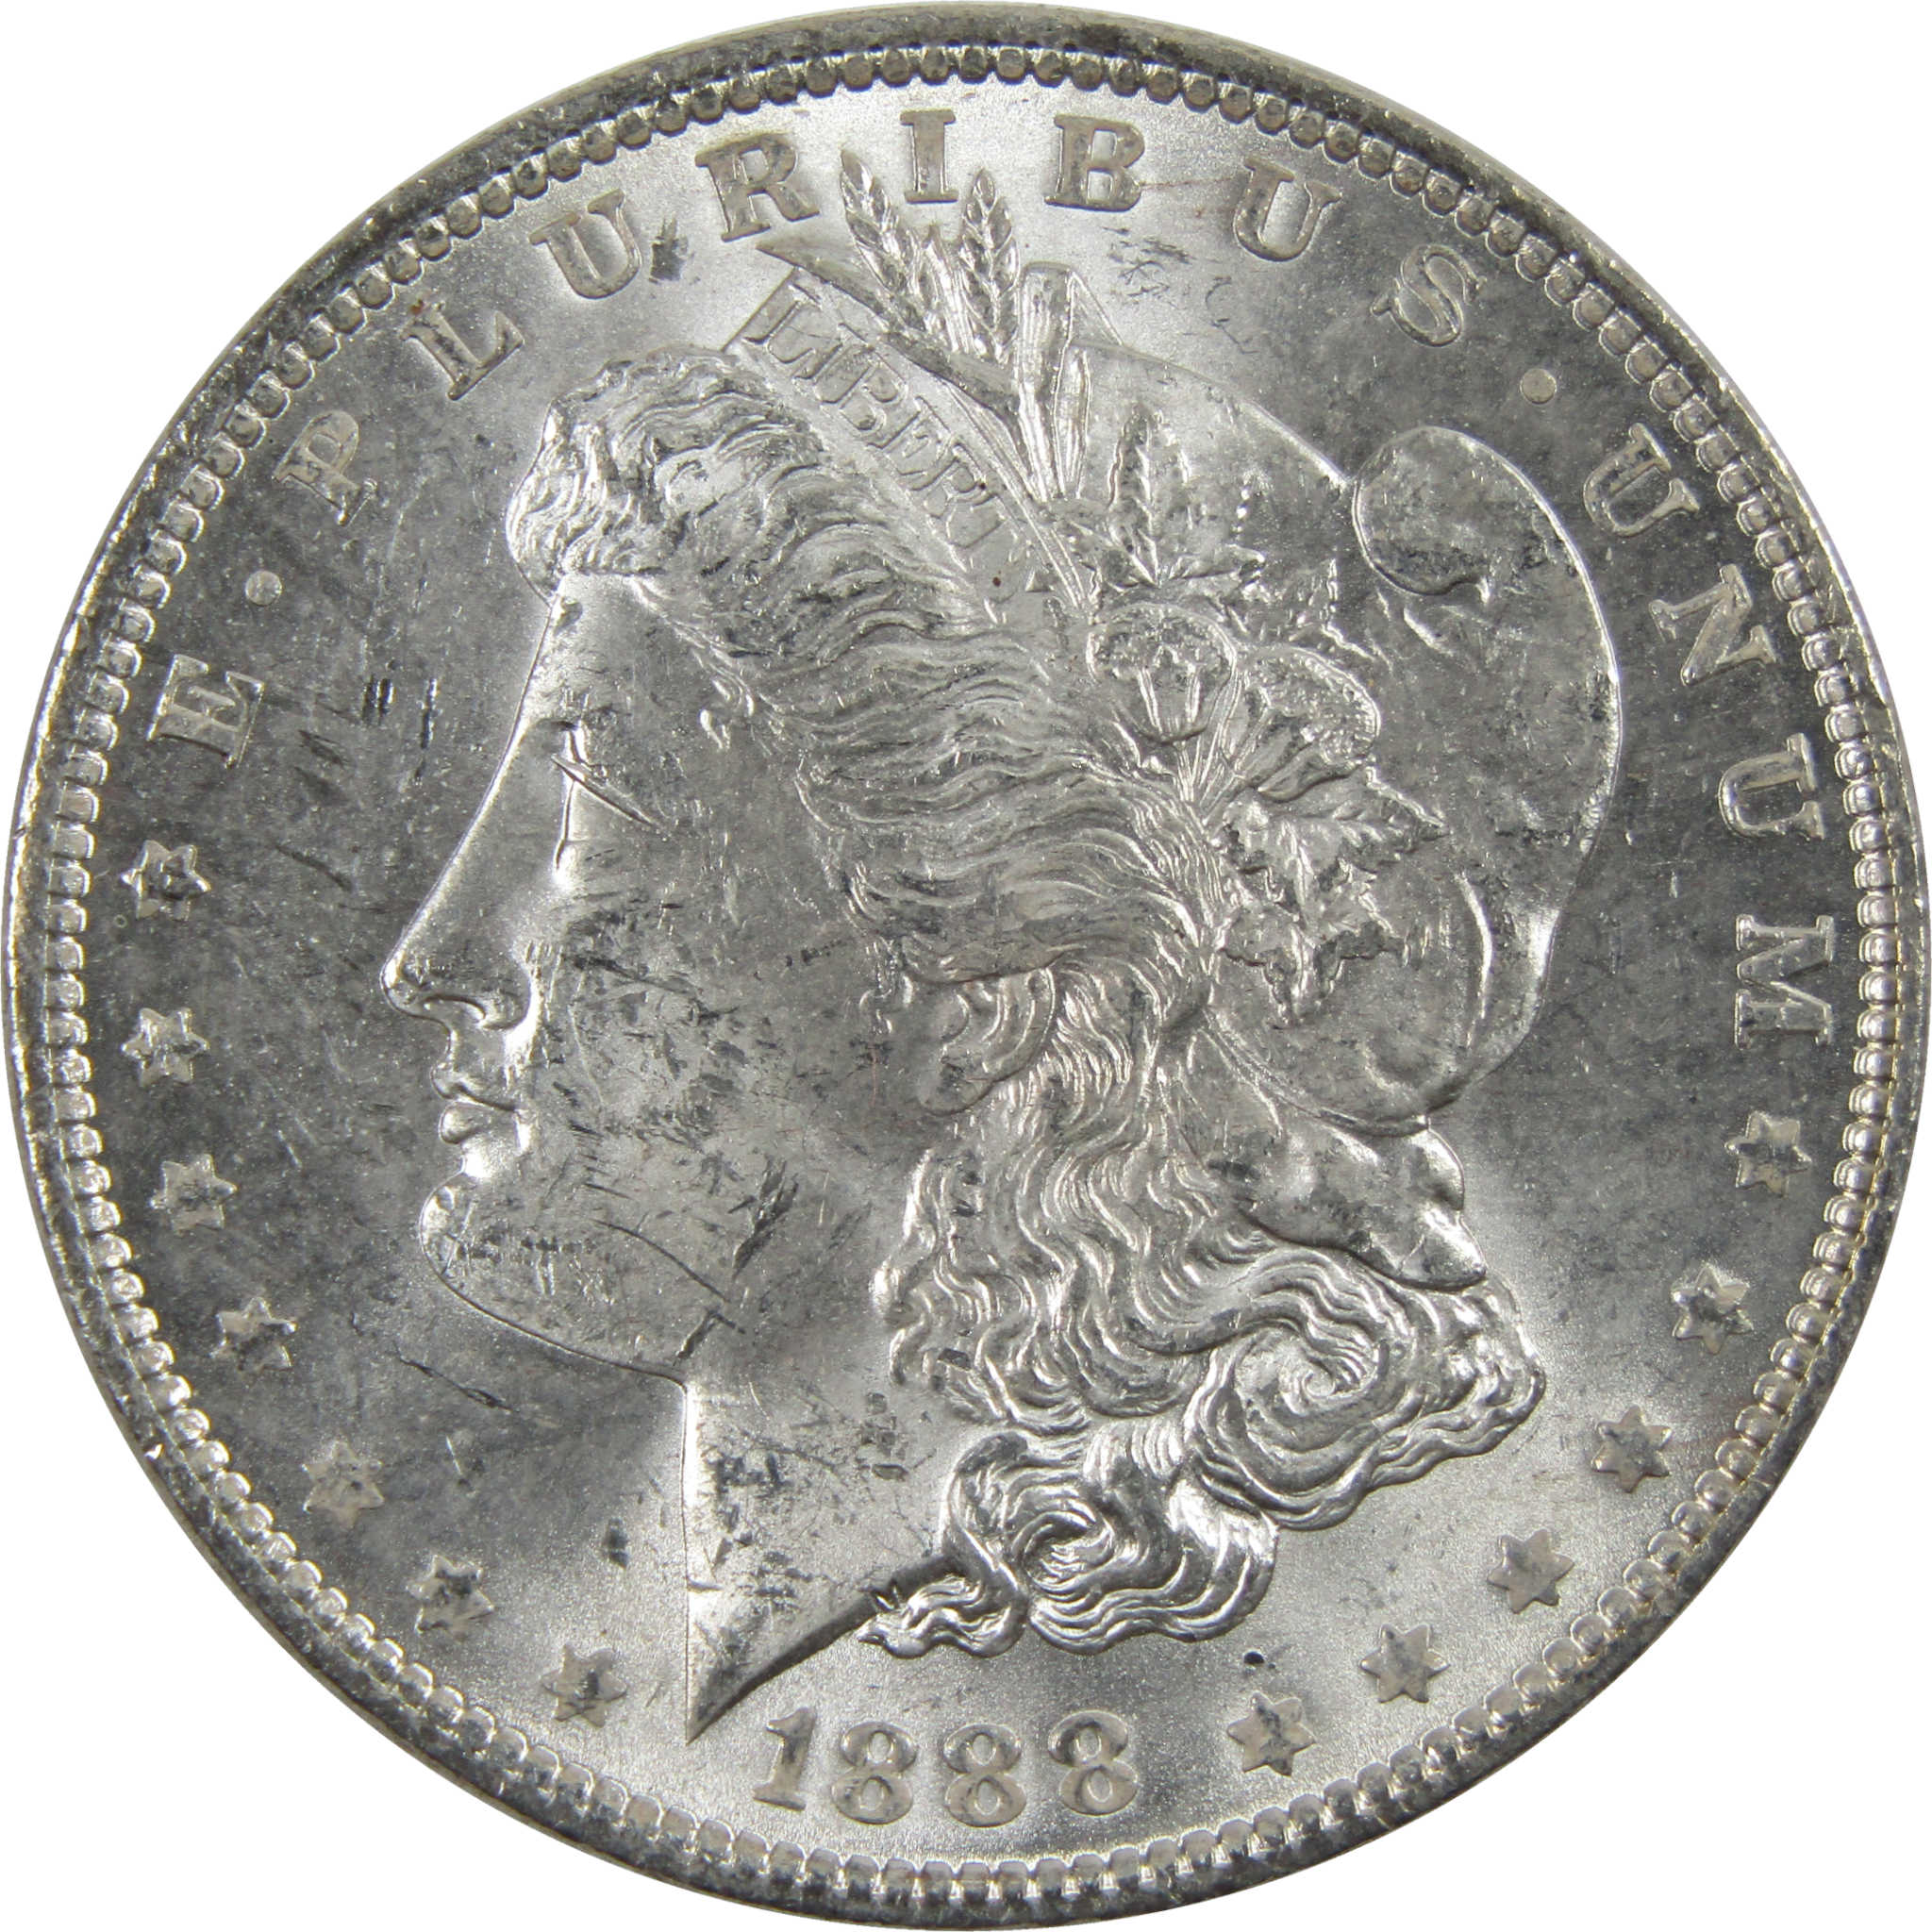 1888 Morgan Dollar BU Uncirculated 90% Silver $1 Coin SKU:I6034 - Morgan coin - Morgan silver dollar - Morgan silver dollar for sale - Profile Coins &amp; Collectibles